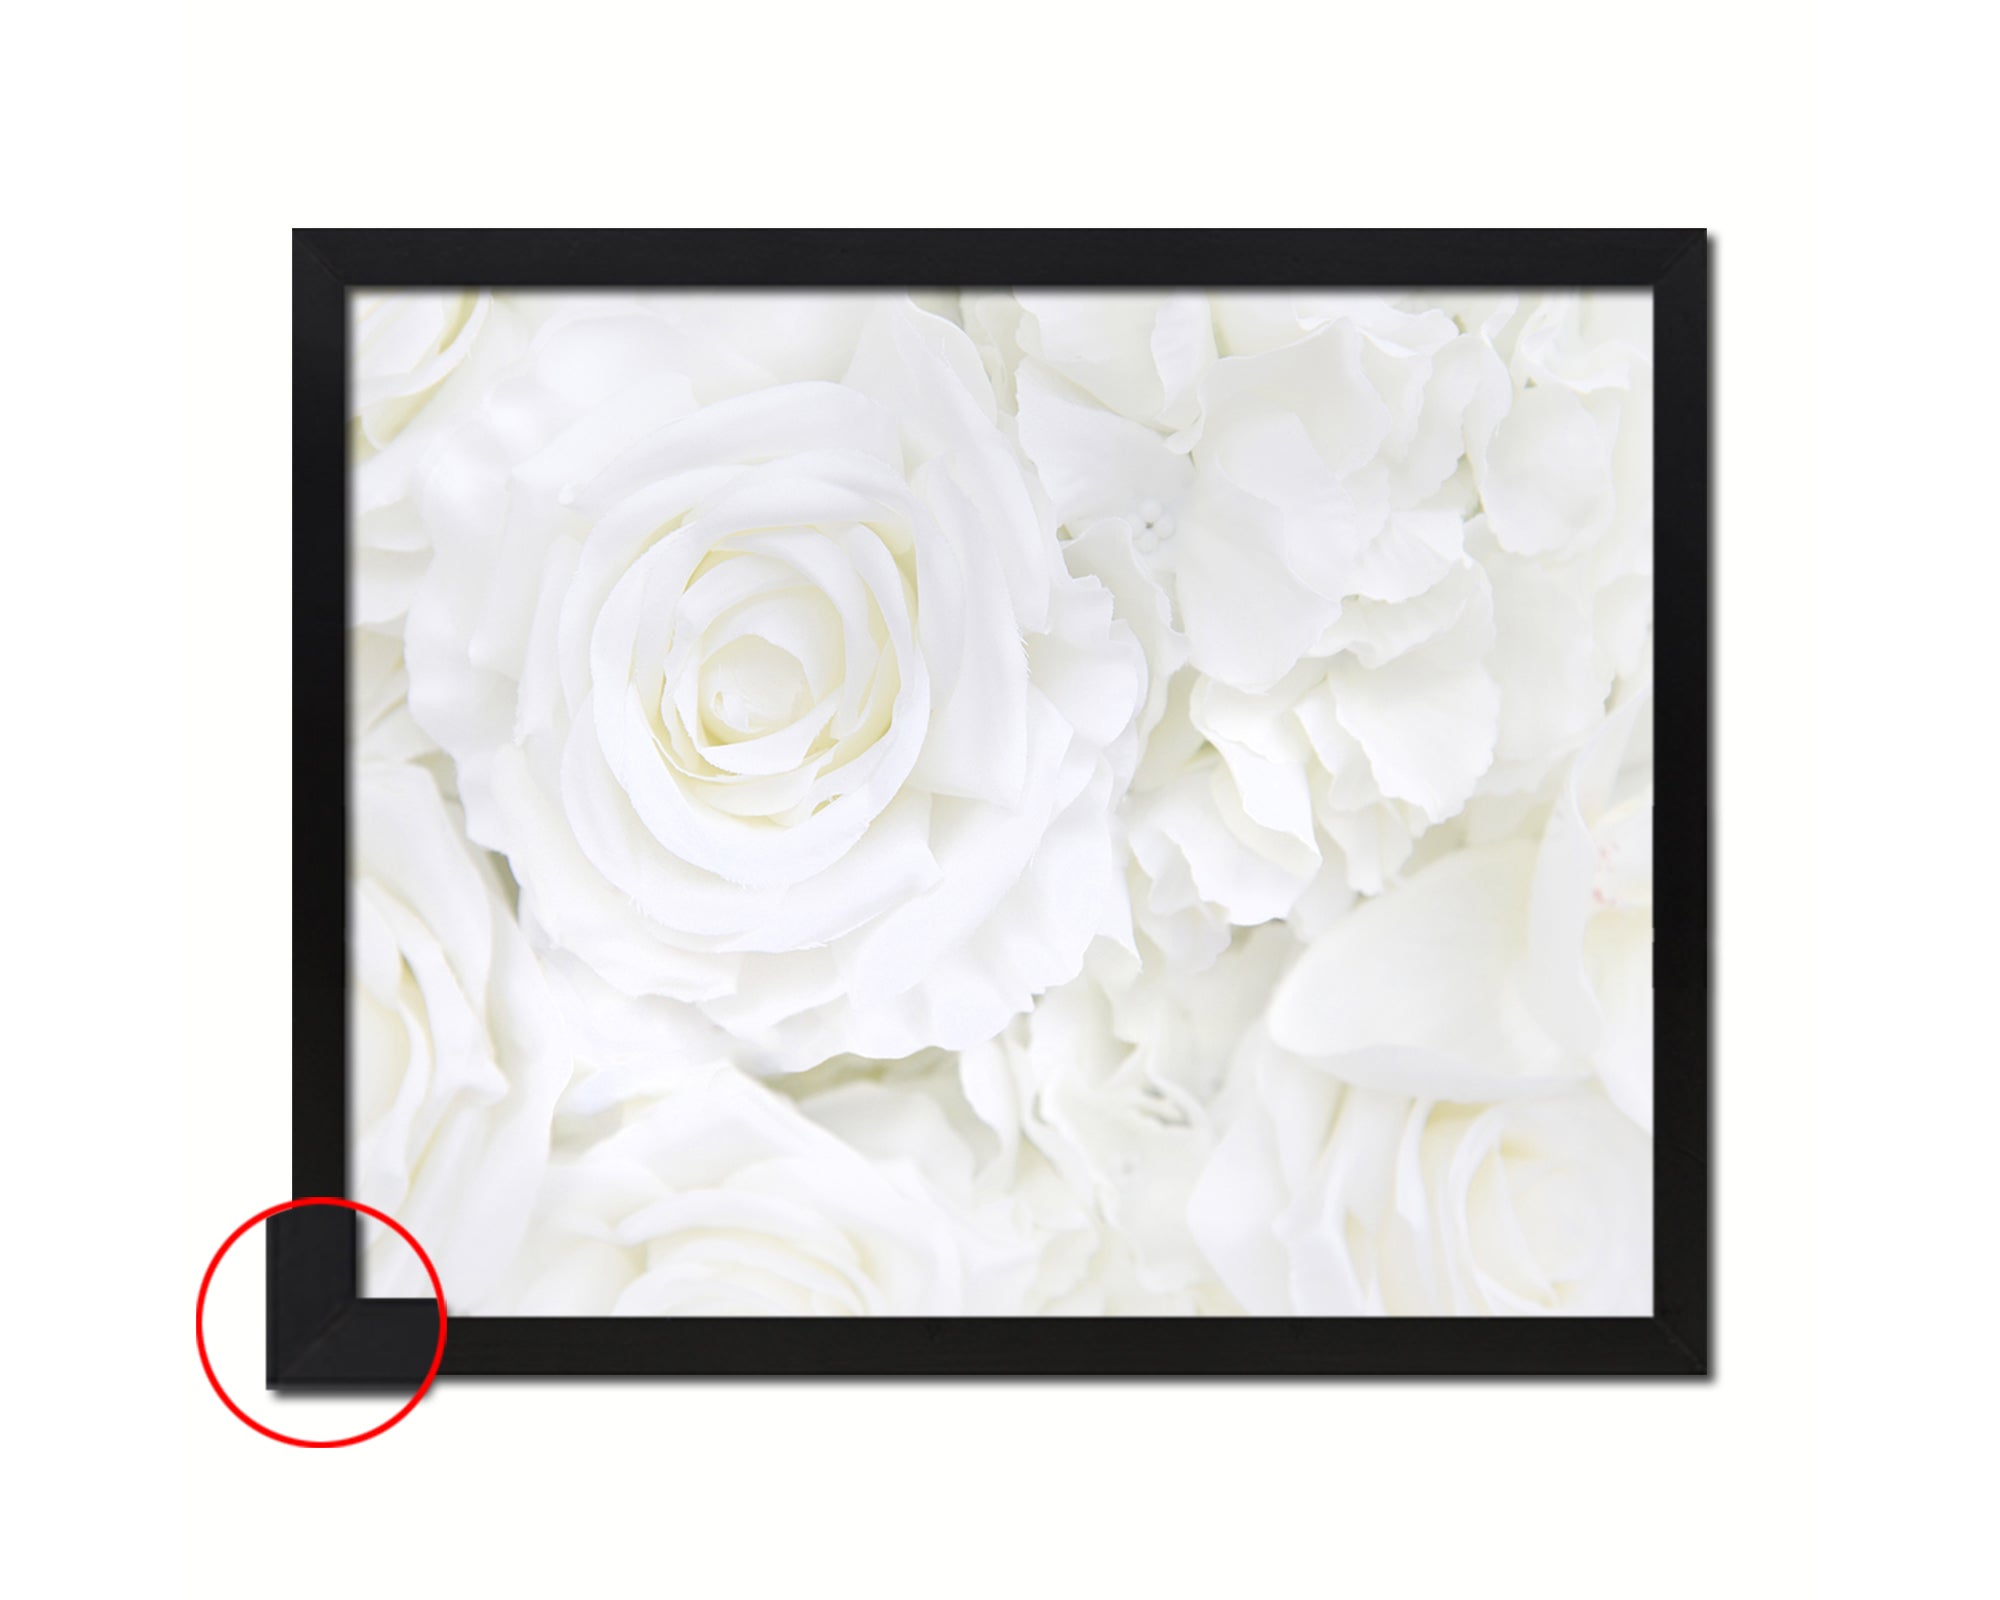 Rose White Flower Wood Framed Paper Print Wall Decor Art Gifts